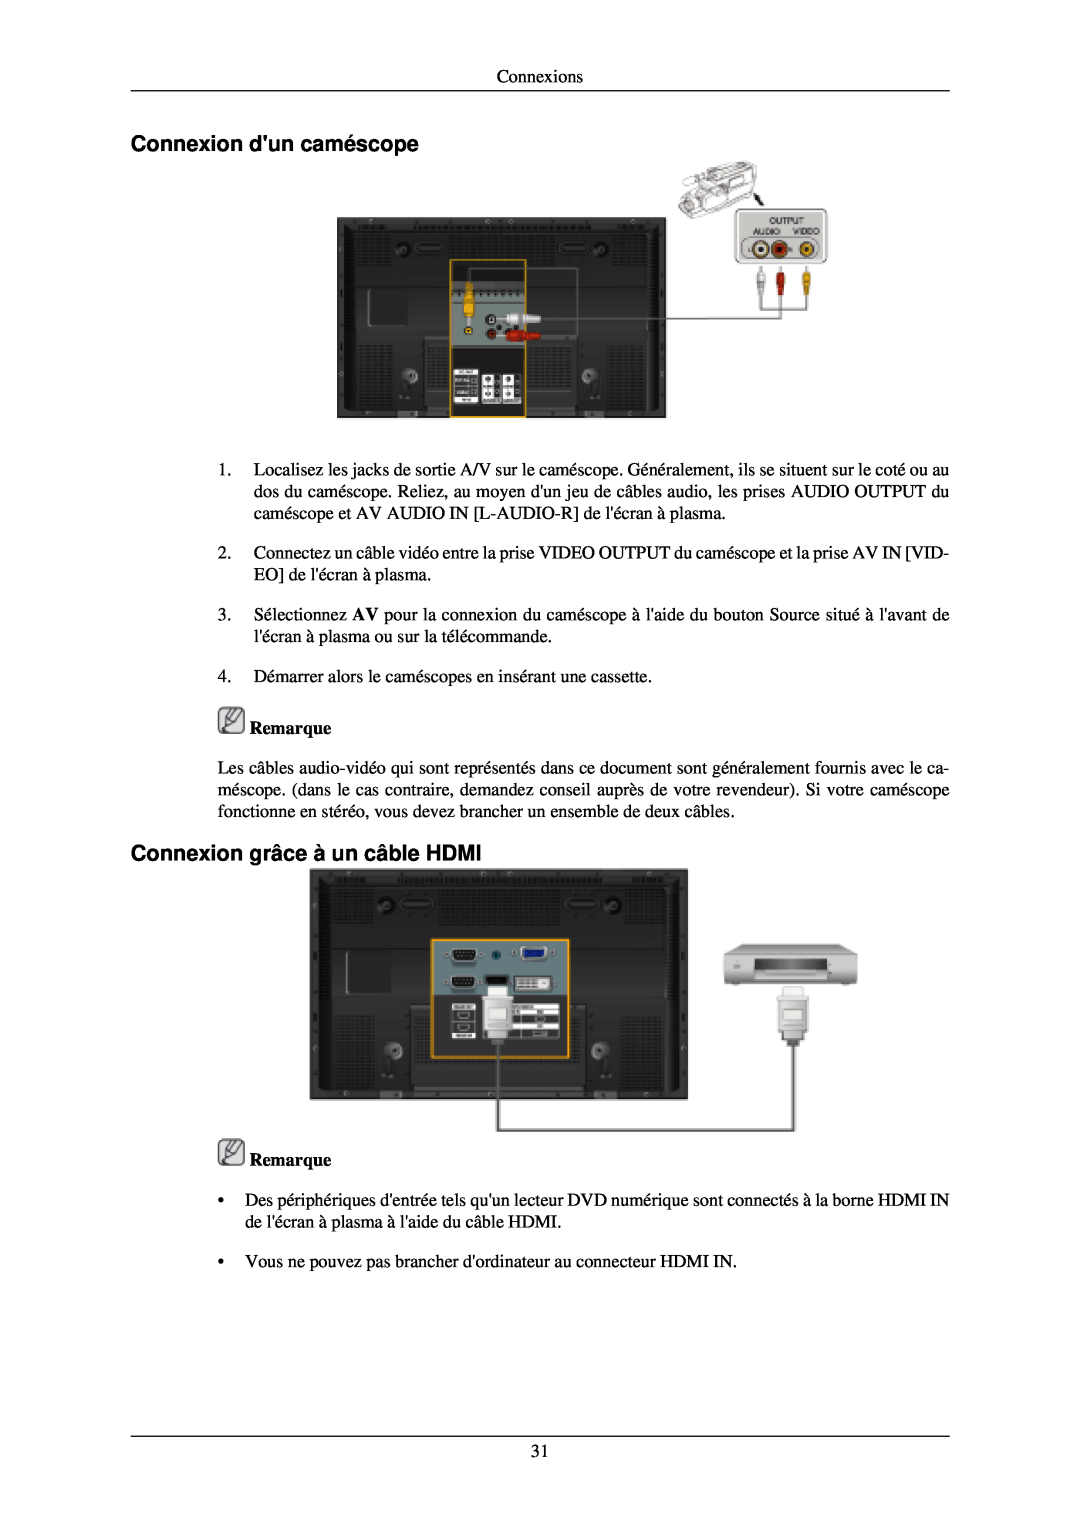 Samsung PH50KLPLBC/EN, PH50KLTLBC/EN, PH42KLTLBC/EN manual Connexion dun caméscope, Connexion grâce à un câble HDMI, Remarque 